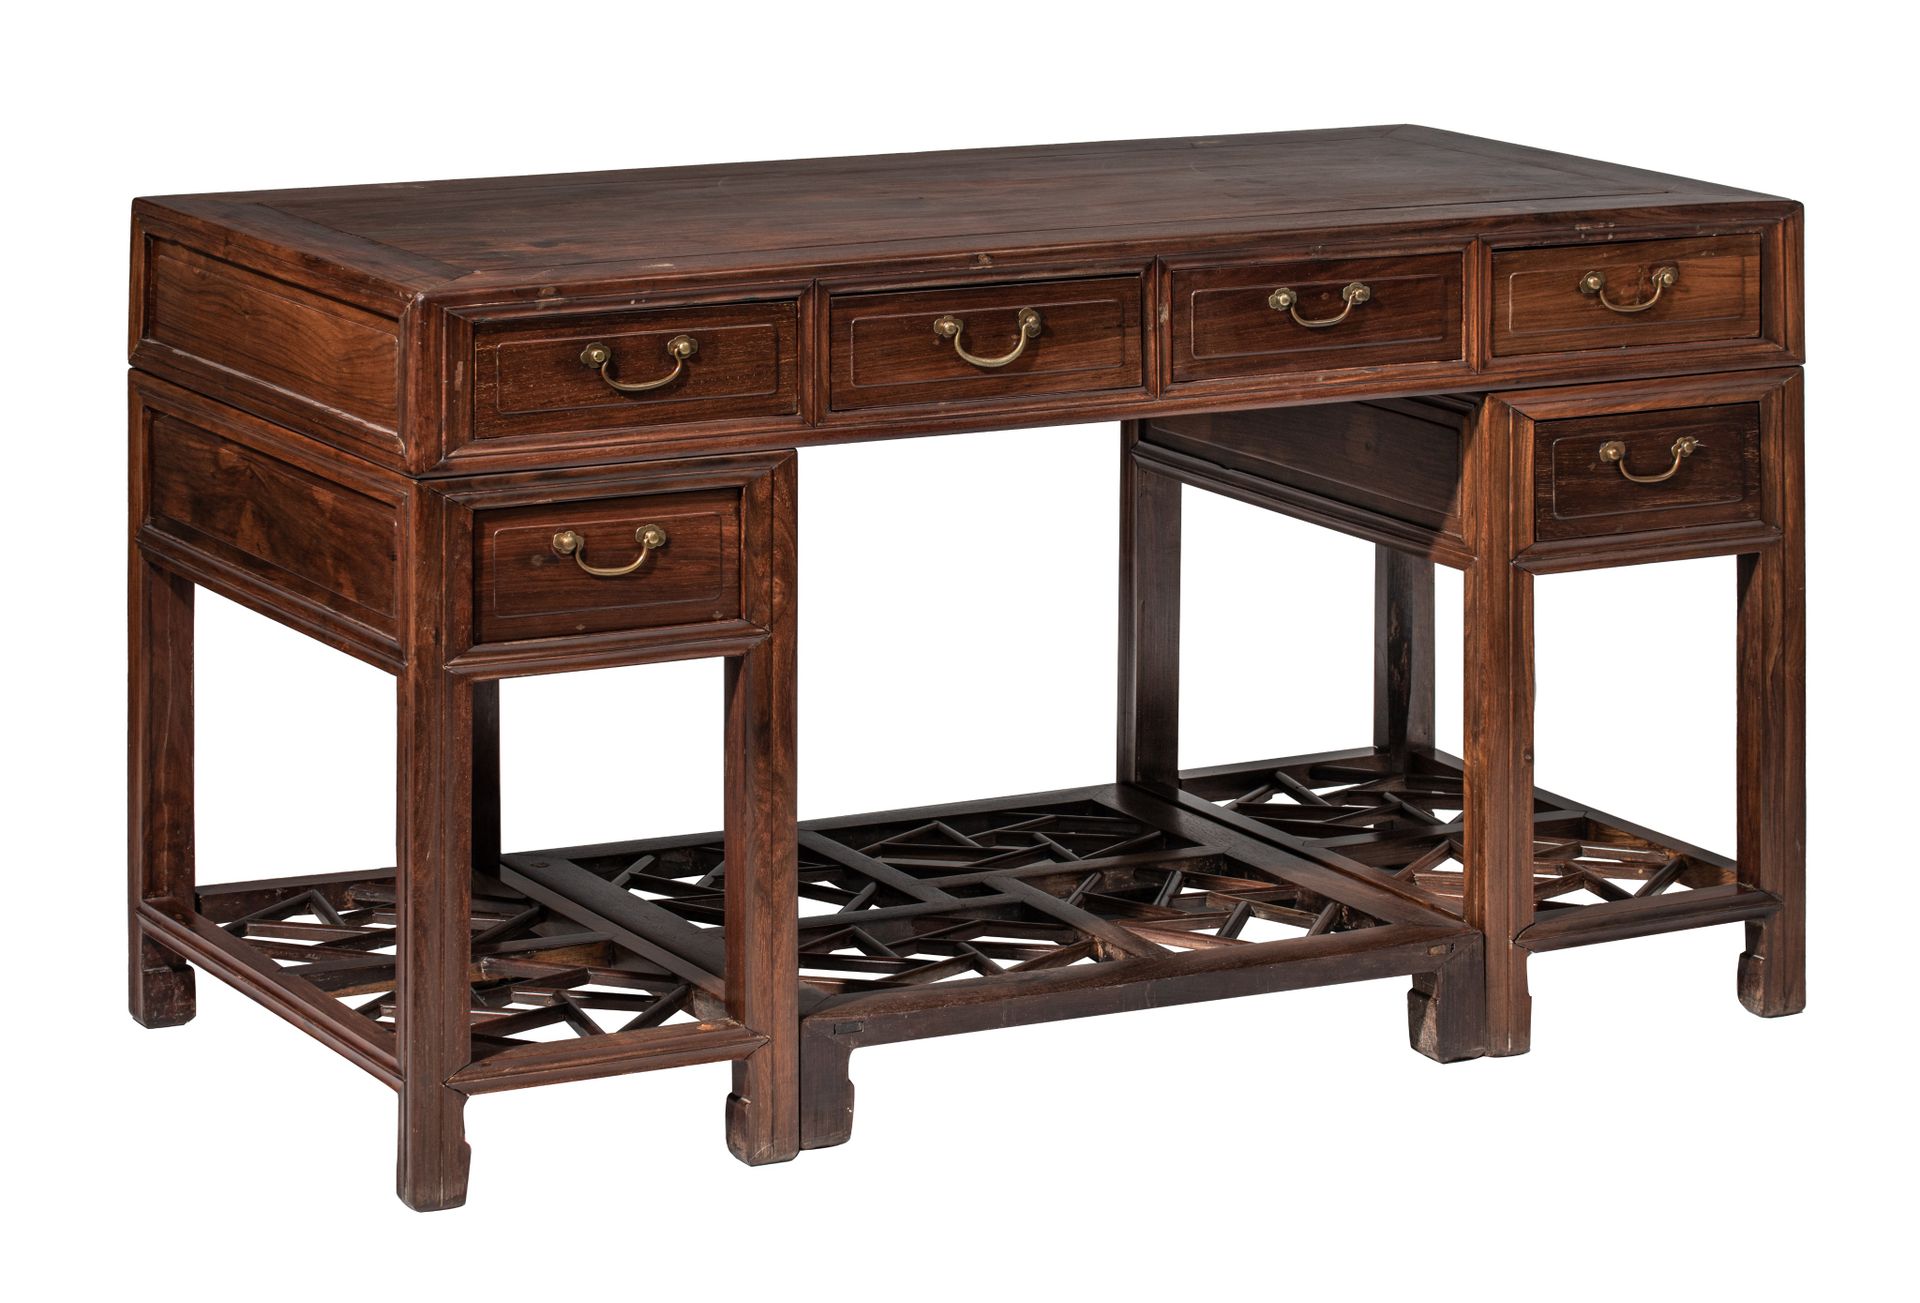 A Chinese hardwood desk, 20thC, H 83 - 144 x 72 cm 一张中国硬木书桌，20世纪，高83-144 x 72厘米
&hellip;